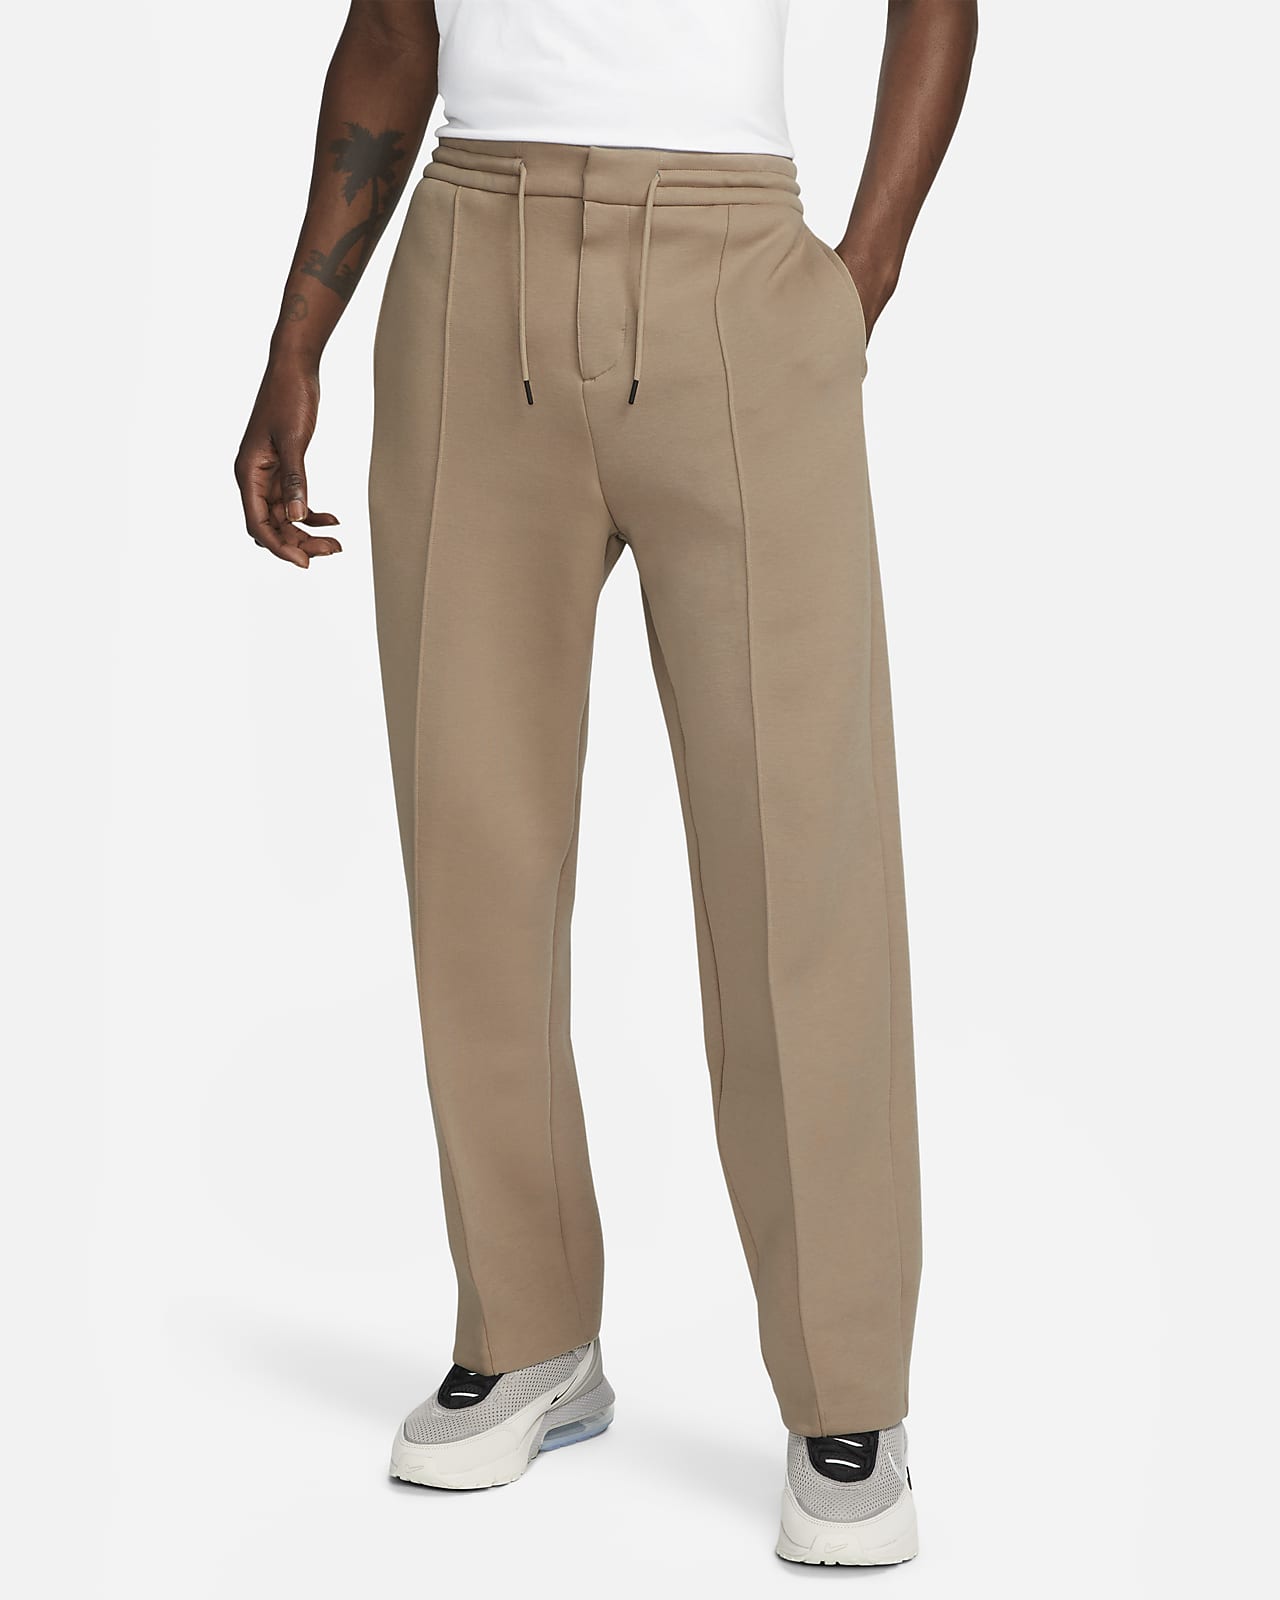 Pants de entrenamiento de ajuste holgado con dobladillo abierto para hombre Nike Sportswear Tech Fleece Reimagined